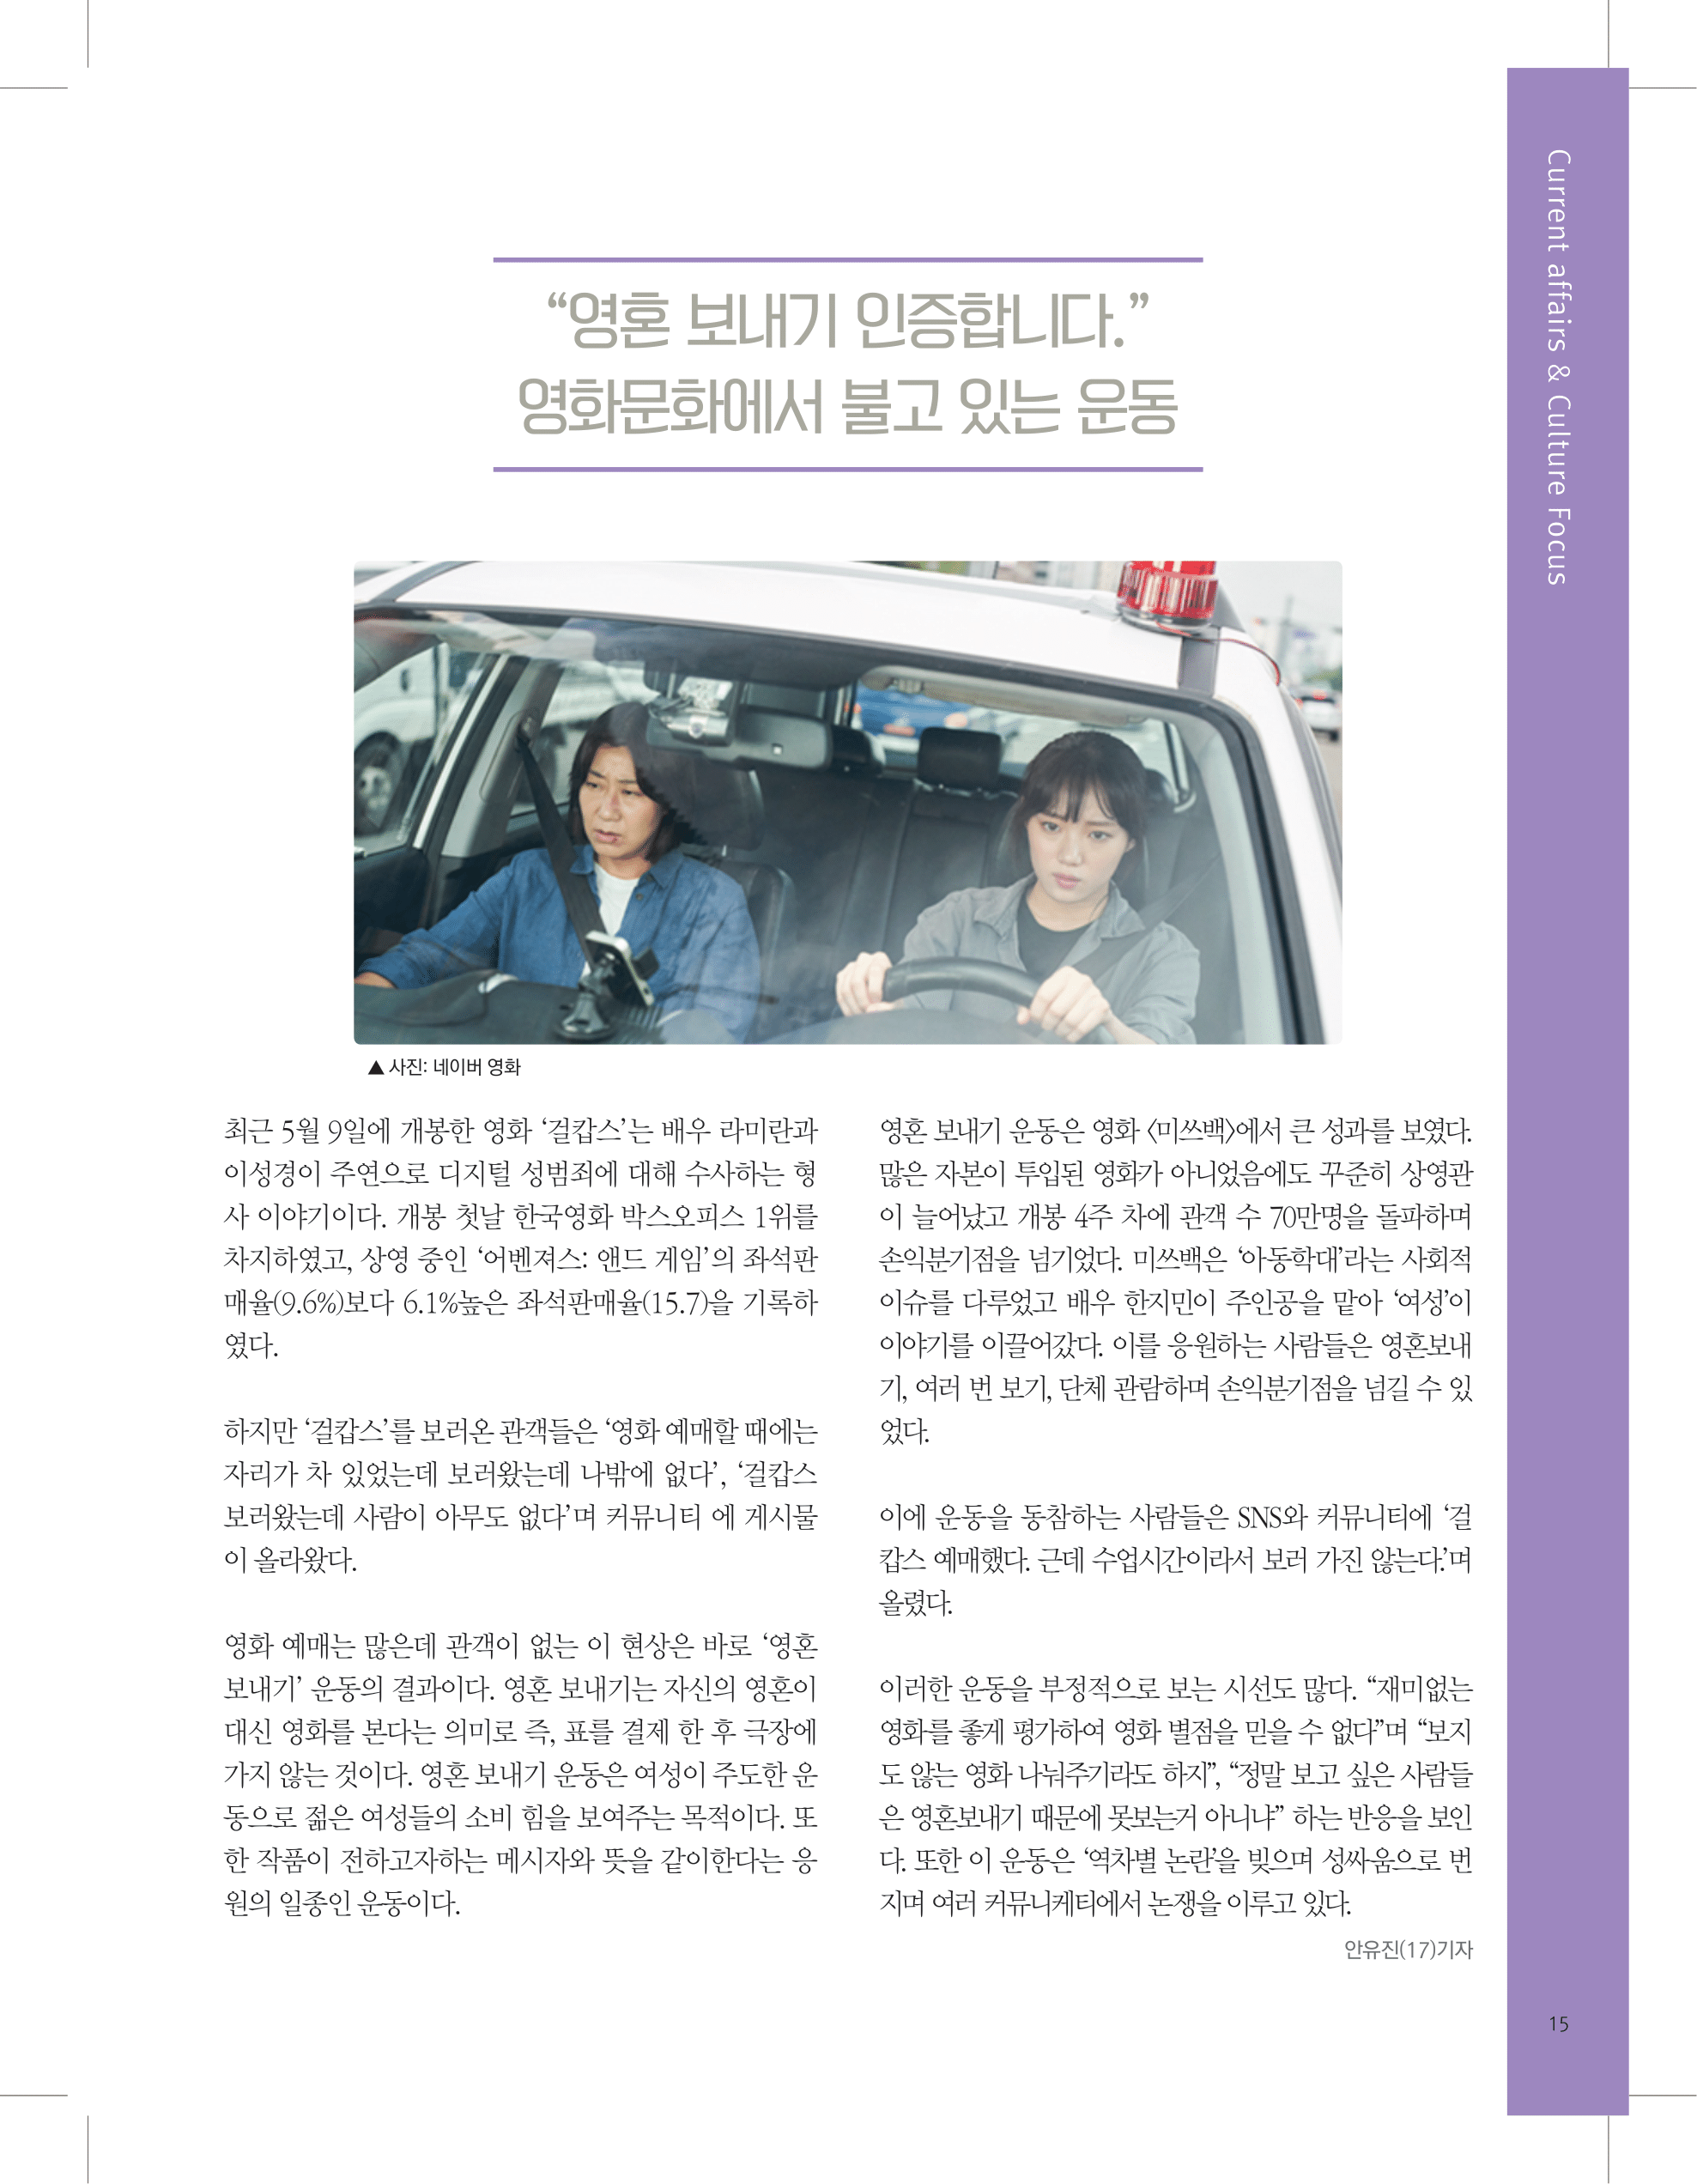 뜻새김 신문 73호 16